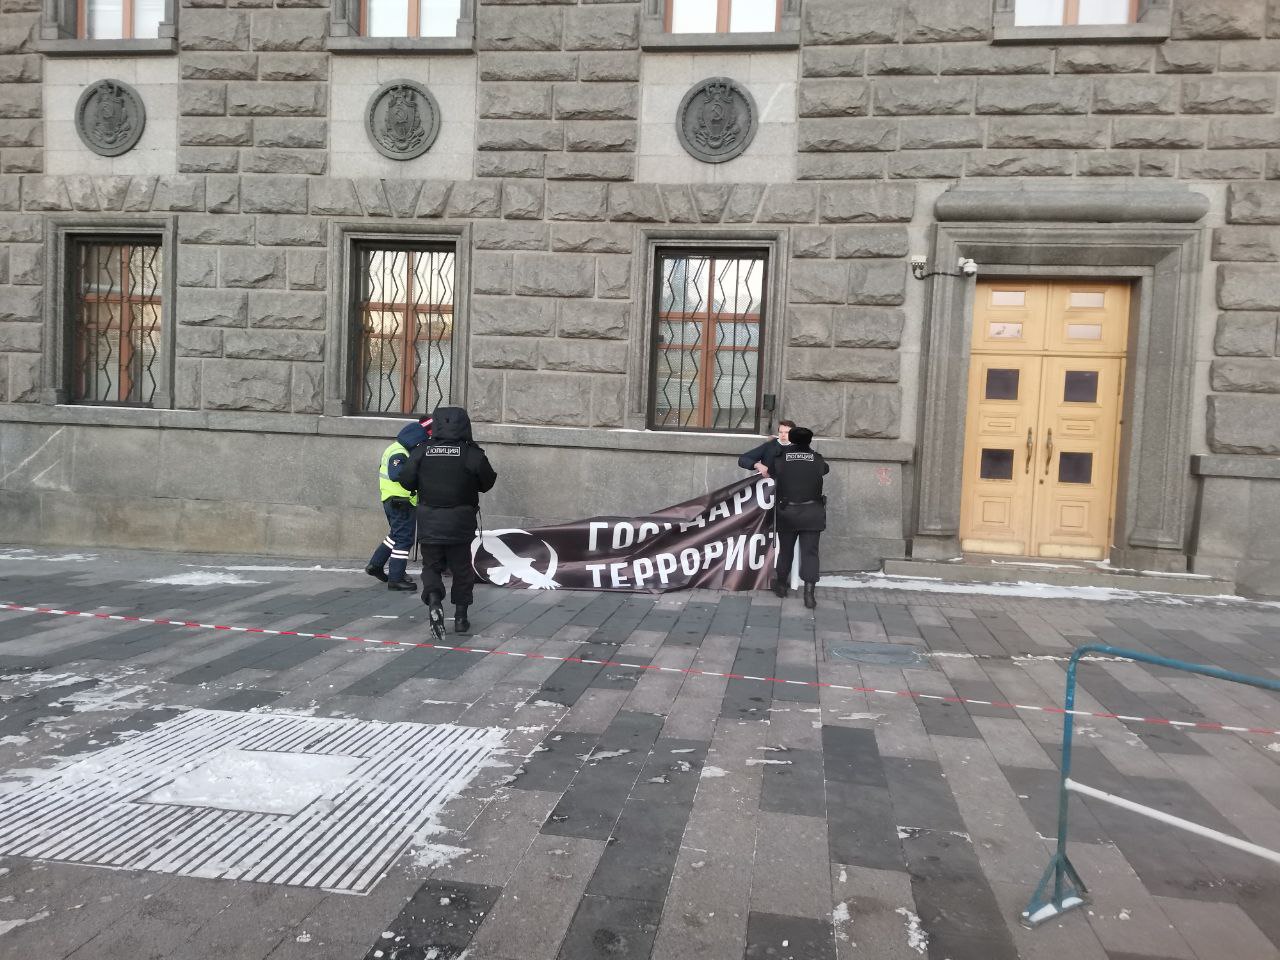 Баннер «Государство — террорист» у здания ФСБ на Лубянке. Фото пресс-службы Либертарианской партии. 